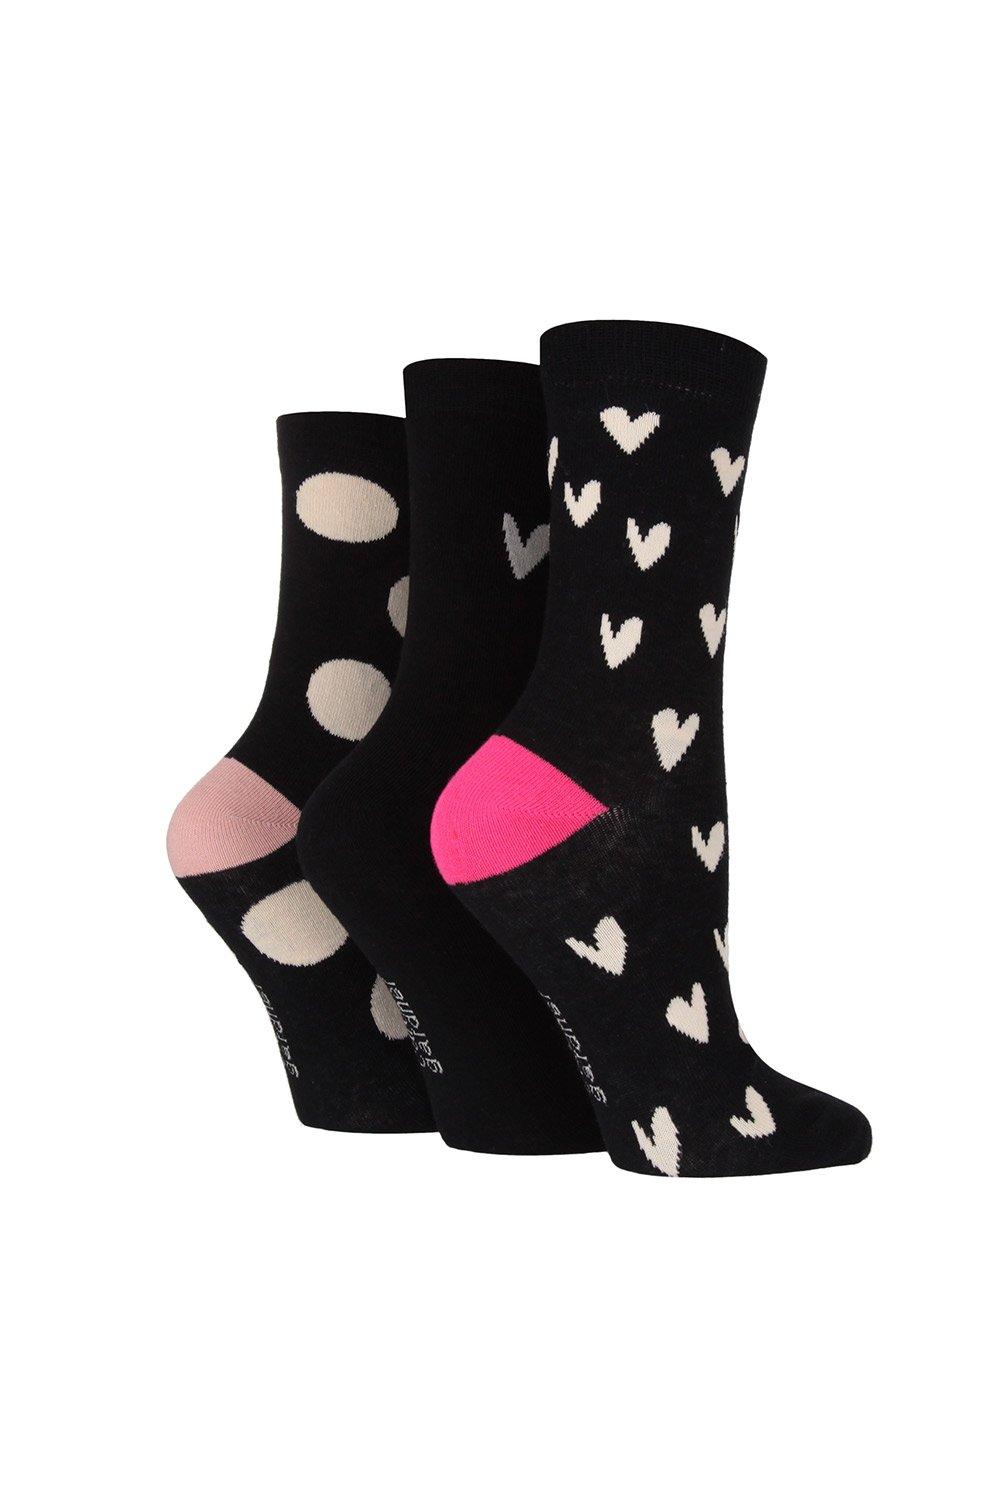 QKURT 5 Pairs of Fluffy Socks,Winter Fuzzy Bed Socks Cosy Sleep Socks Thick  Winter Slipper Socks for Girls Women